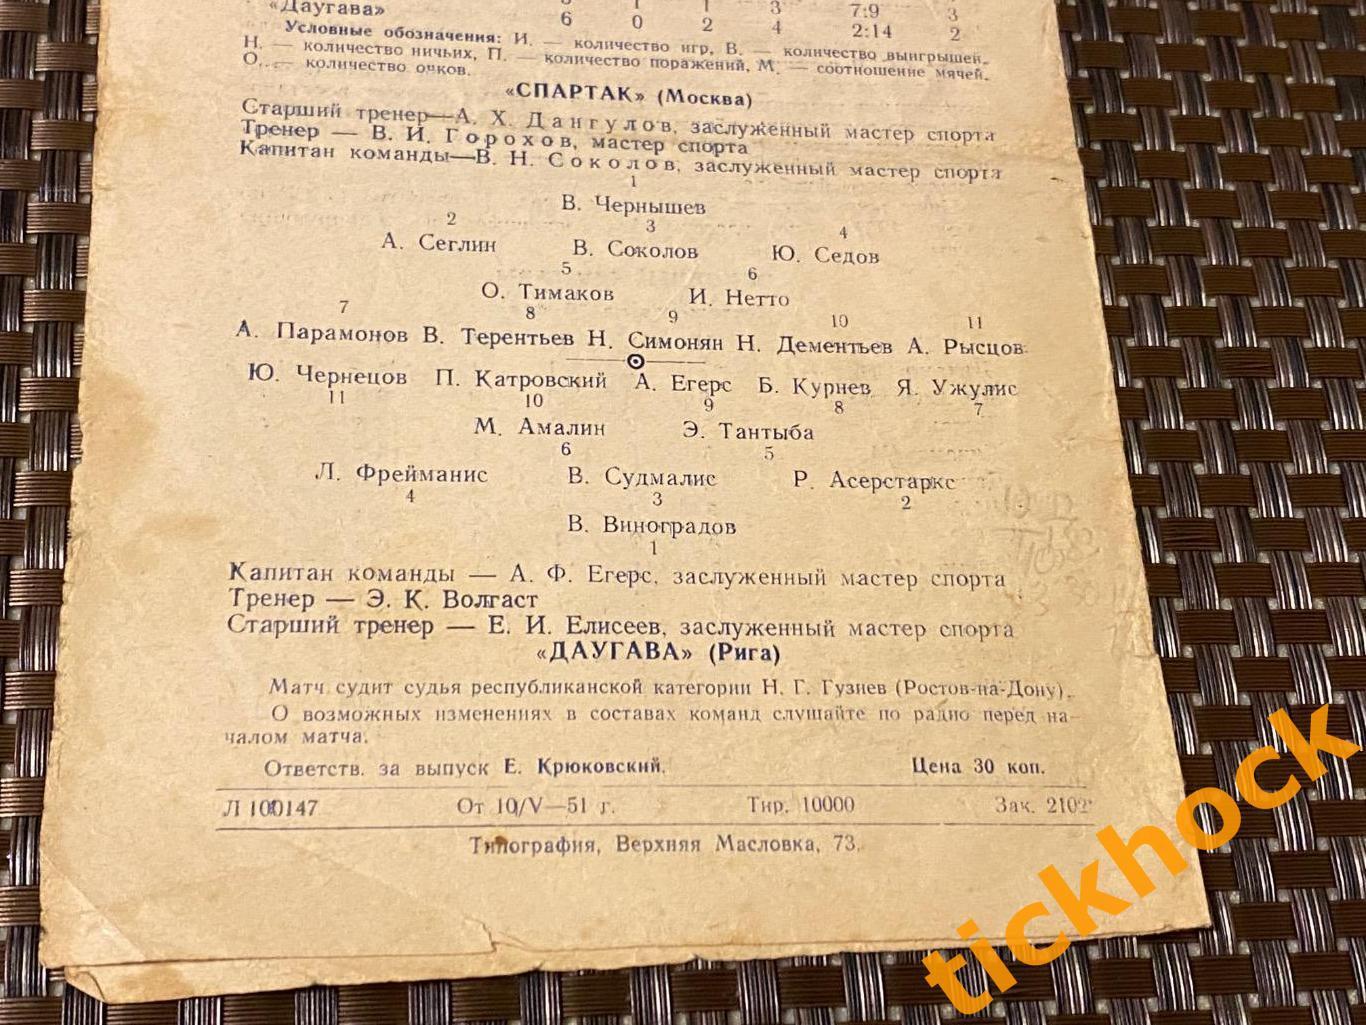 Спартак Москва - Даугава Рига 12.05.1951 Первенство СССР - SY 1